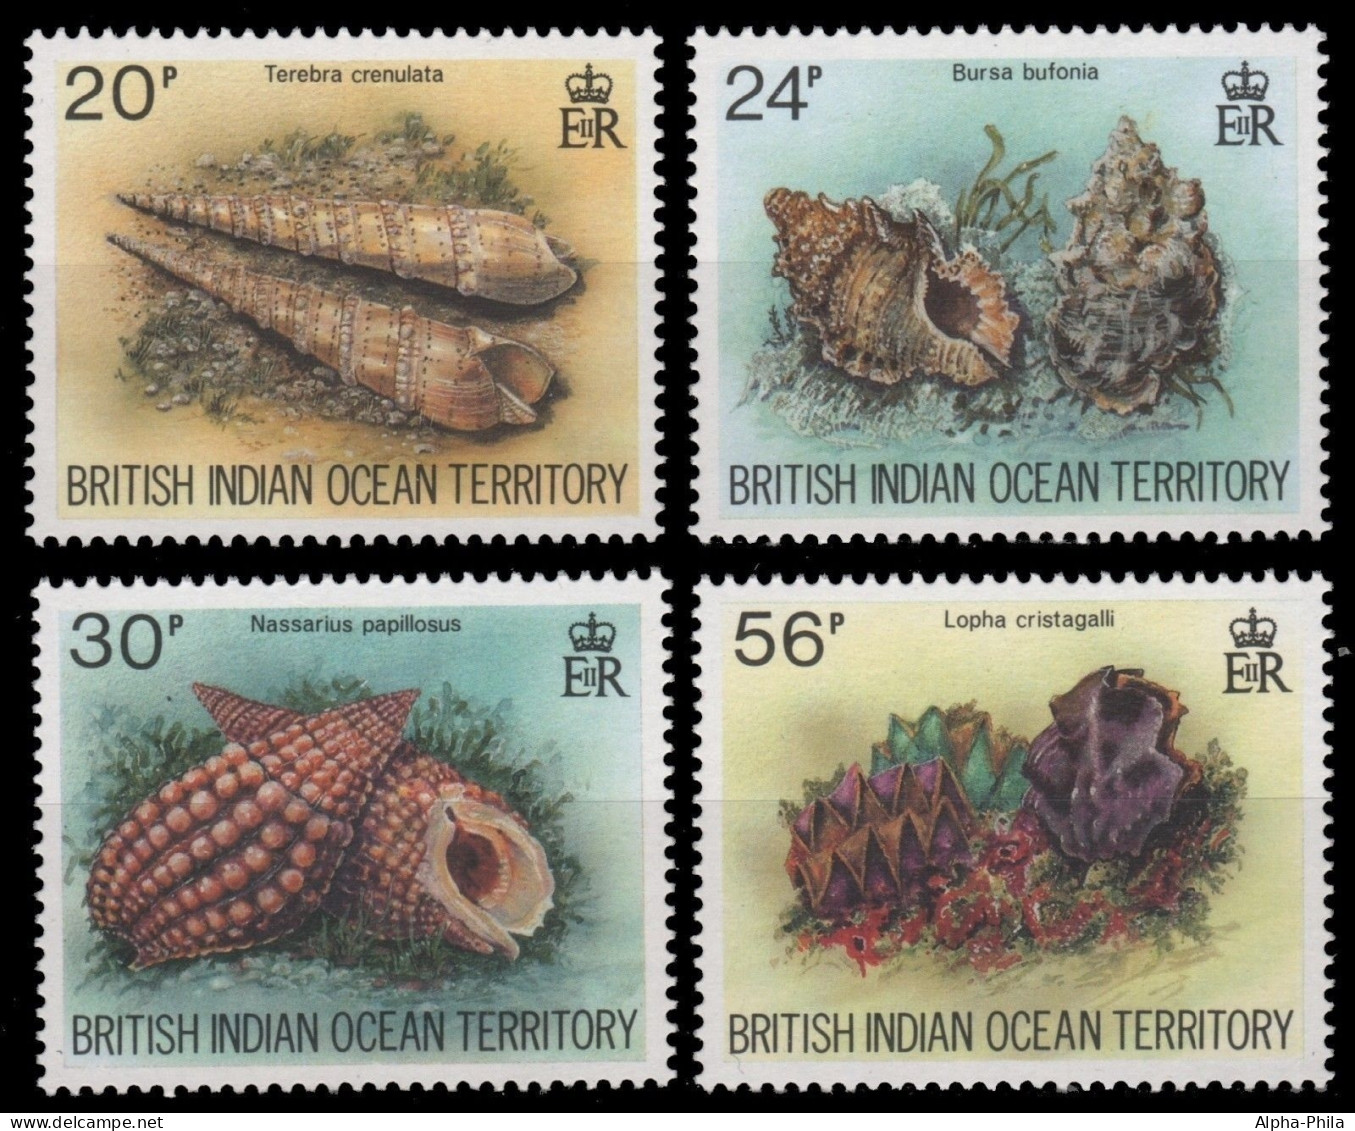 BIOT 1996 - Mi-Nr. 179-182 ** - MNH - Meeresschnecken / Marine Snails - Britisches Territorium Im Indischen Ozean